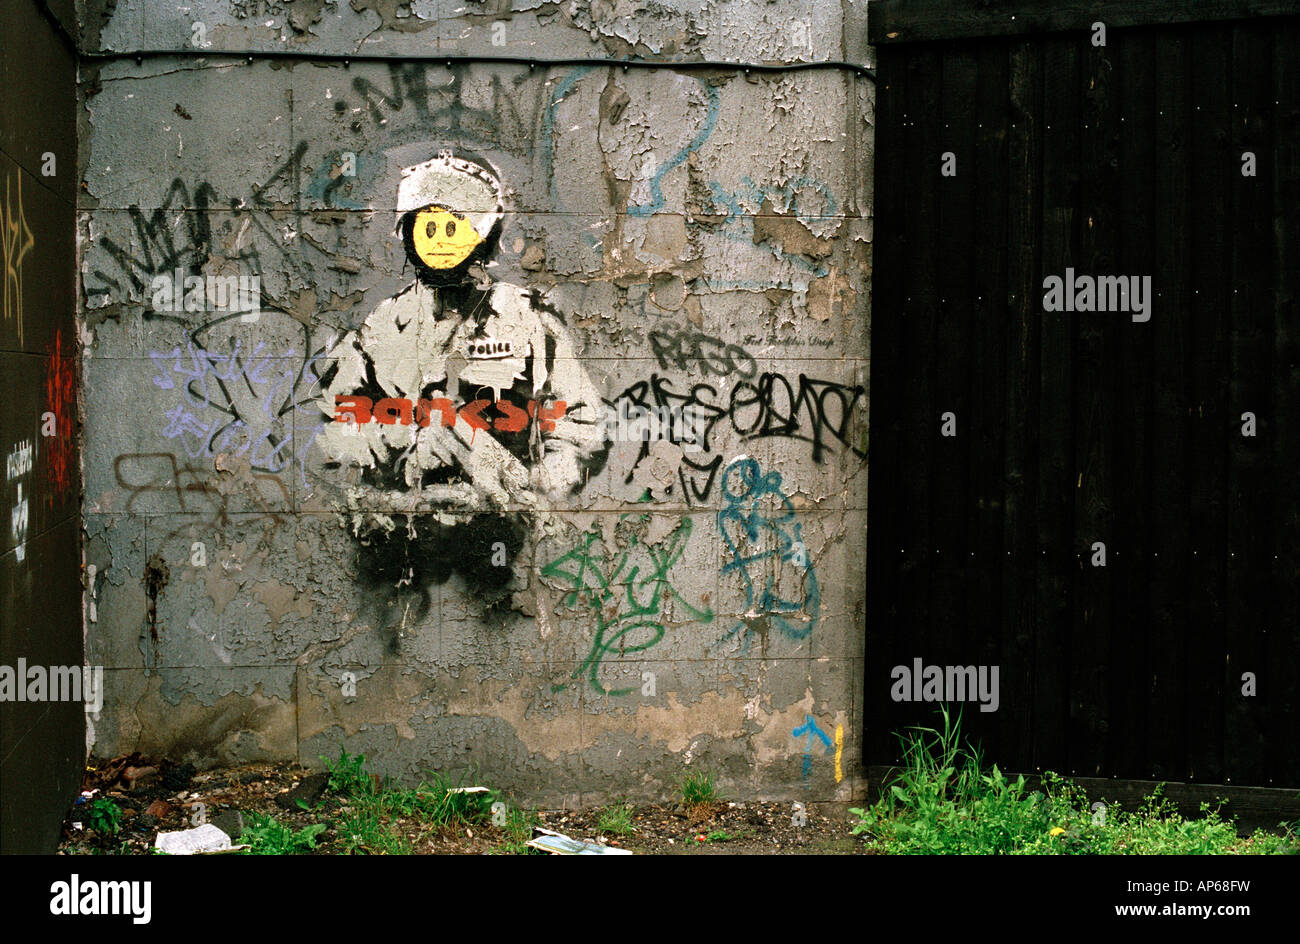 Schablone von der Graffiti-Künstler Banksy, in der Nähe von Old Street, London Stockfoto